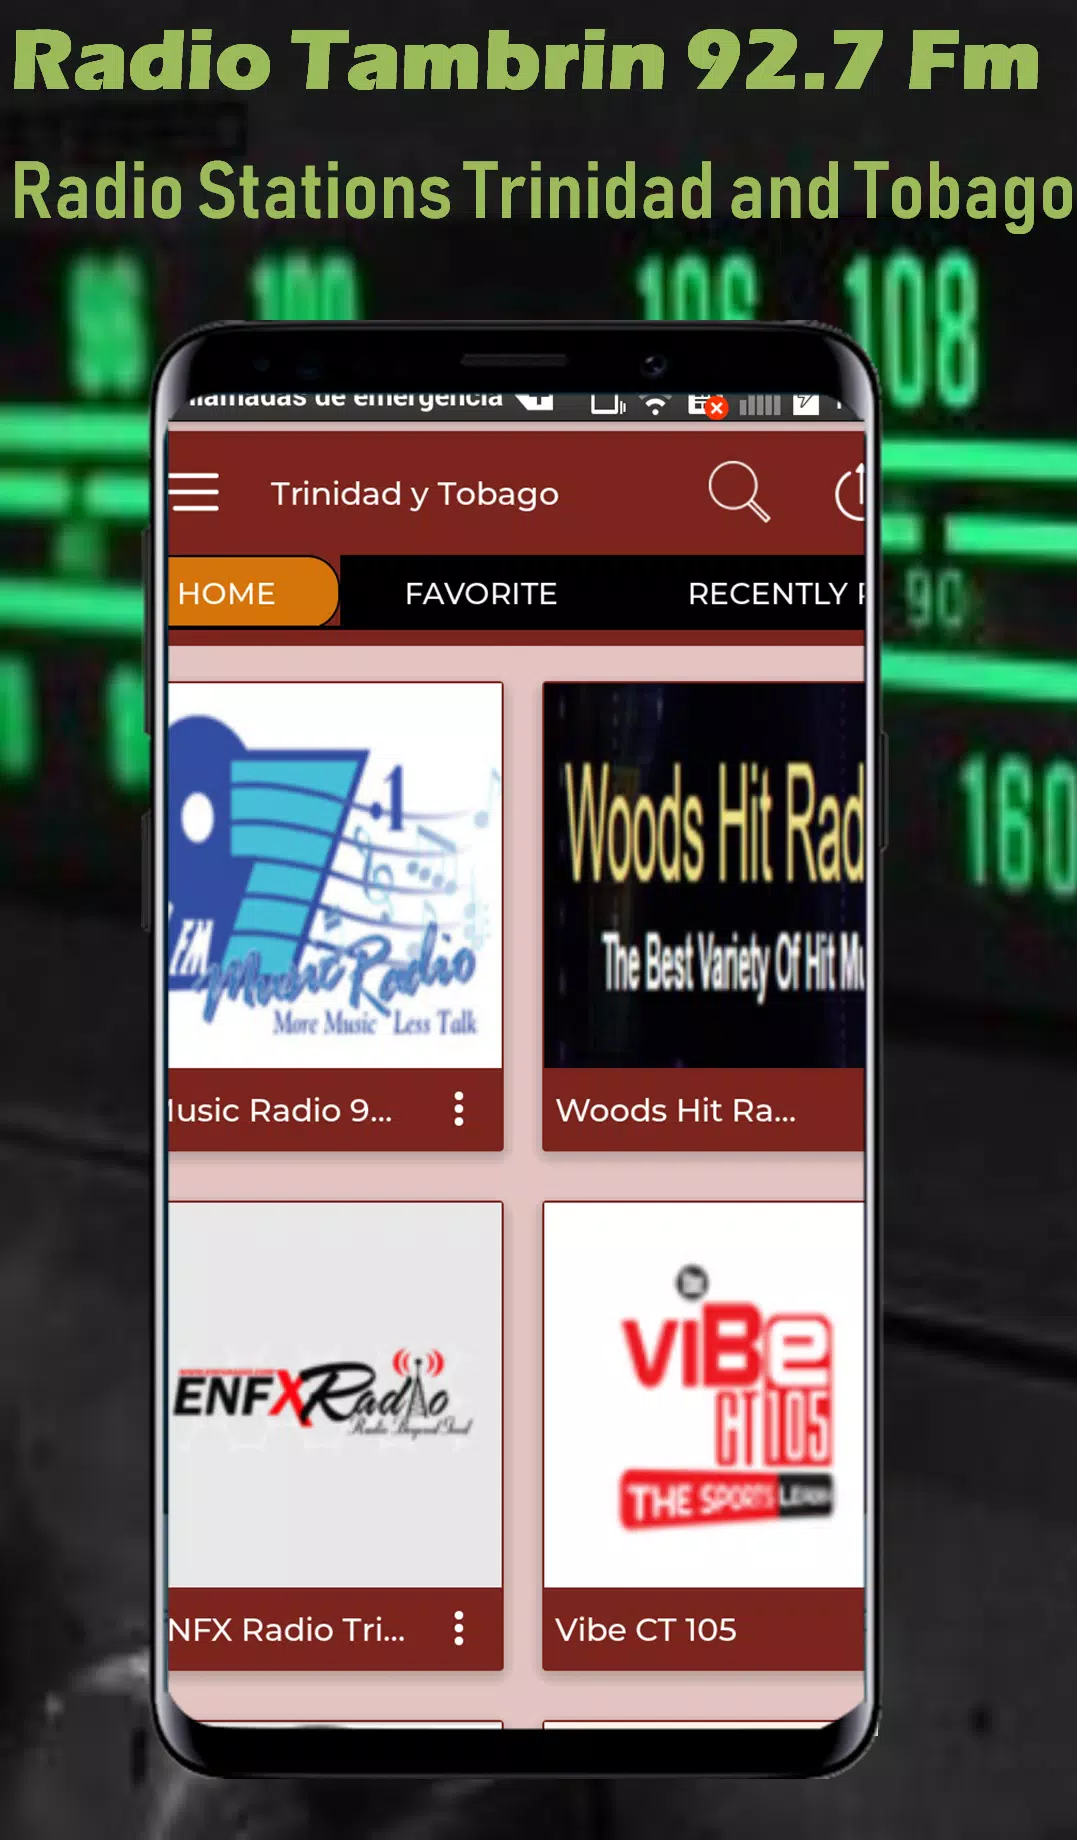 Radio Tambrin Trinidad Tobago for Android - APK Download